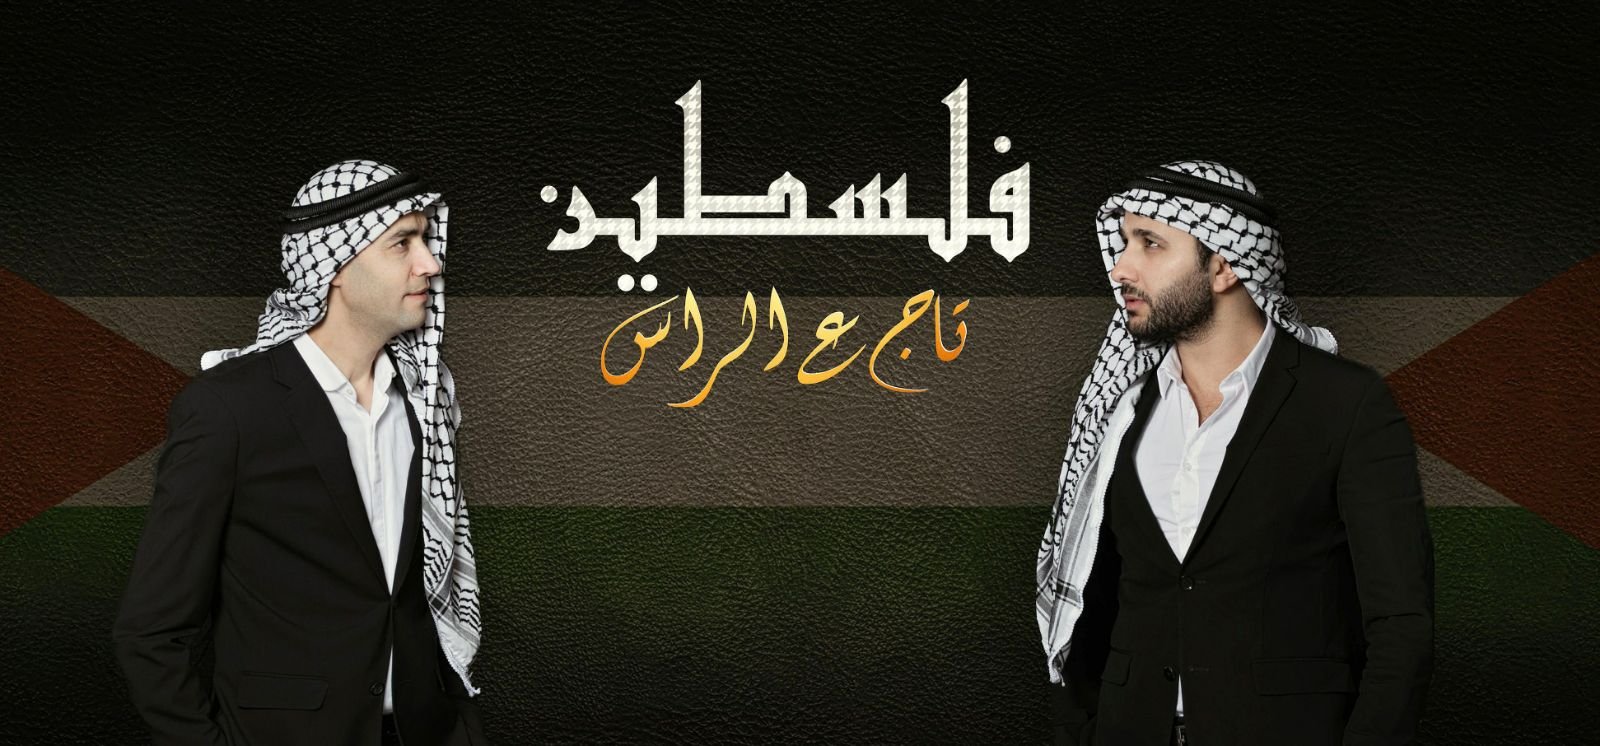 اغنية جديدة للفنانين ماهر حلبي ومهند خلف فلسطين تاج ع الراس	-0